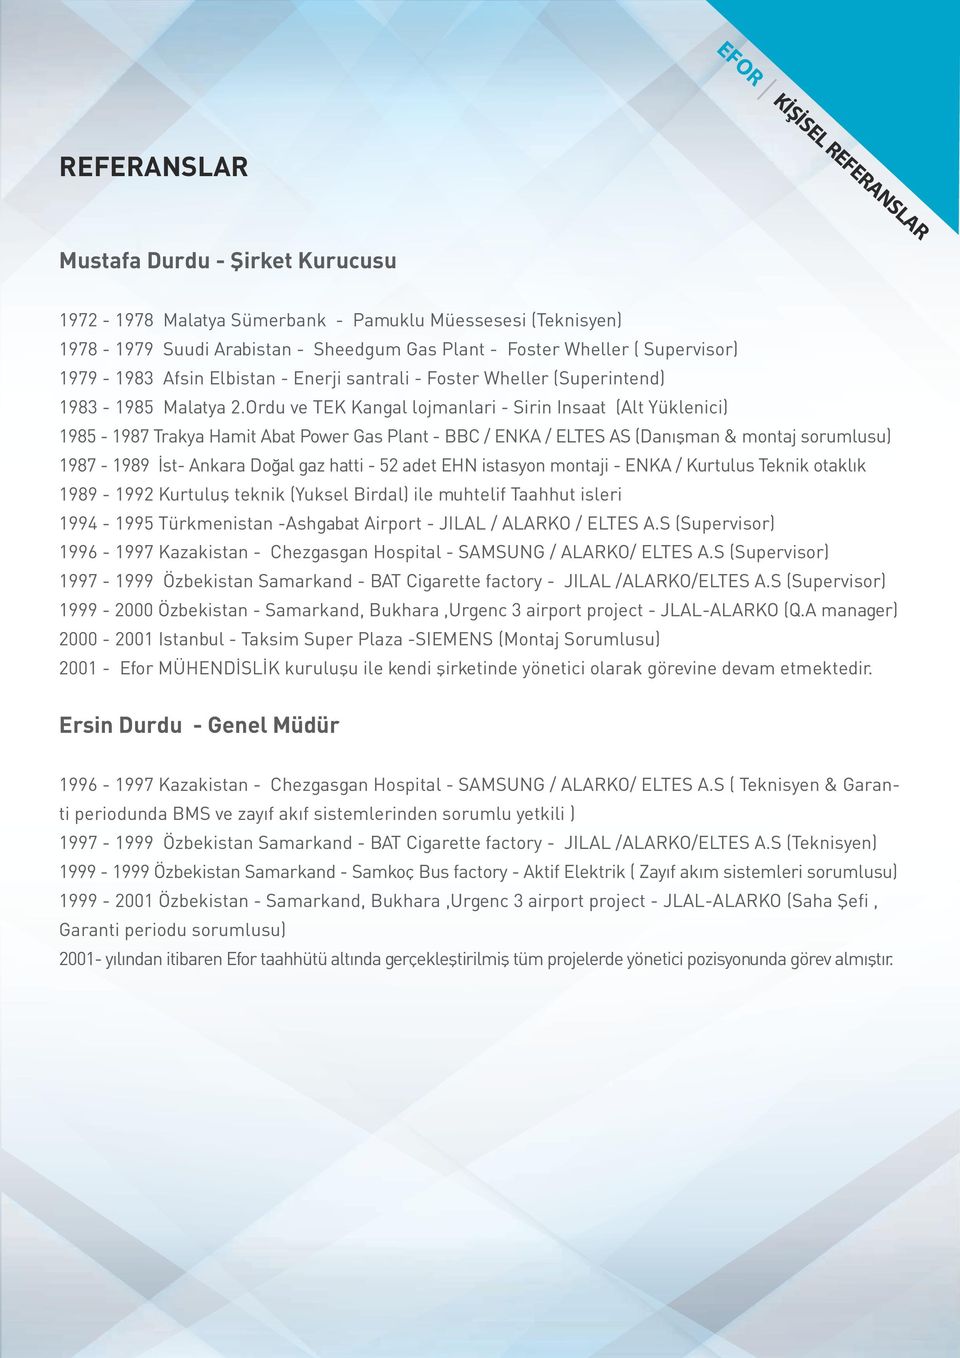 Ordu ve TEK Kangal lojmanlari - Sirin Insaat (Alt Yüklenici) 1985-1987 Trakya Hamit Abat Power Gas Plant - BBC / ENKA / ELTES AS (Danışman & montaj sorumlusu) 1987-1989 İst- Ankara Doğal gaz hatti -